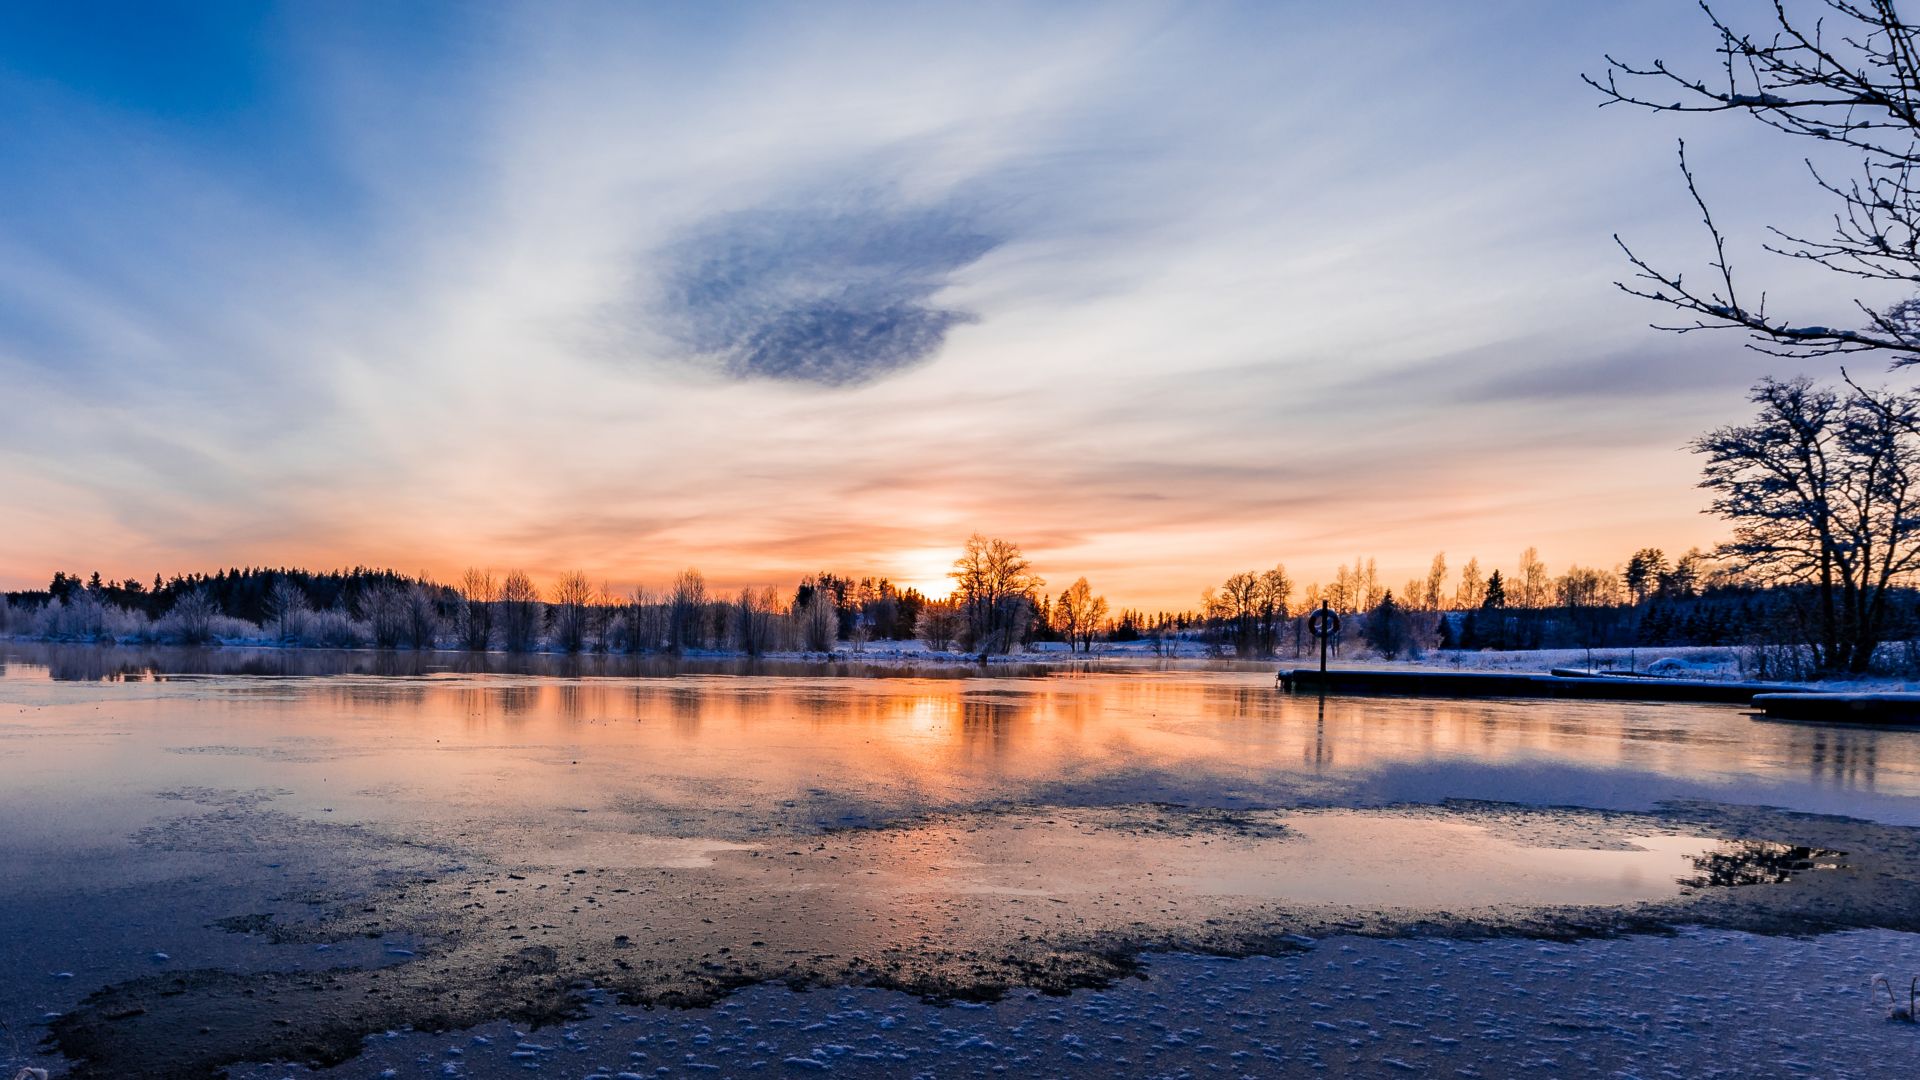 Coucher de soleil sur une varmlande enneigée et froide en Suède